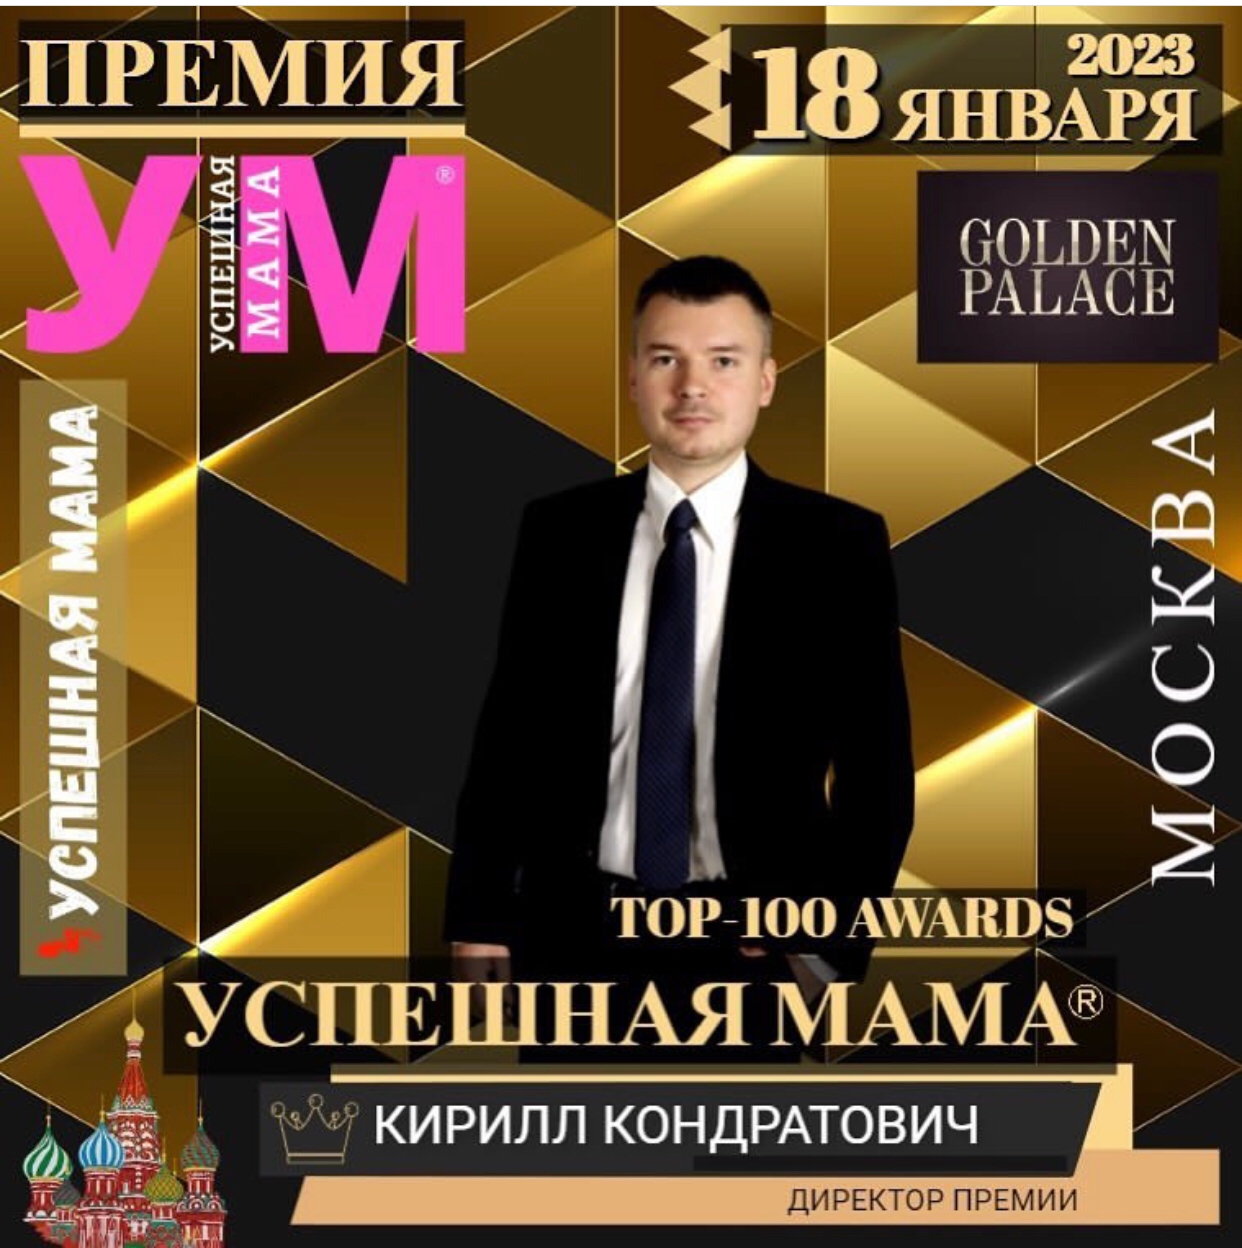 фото: 18 января 2023 в Москве состоится премия «Успешная мама».